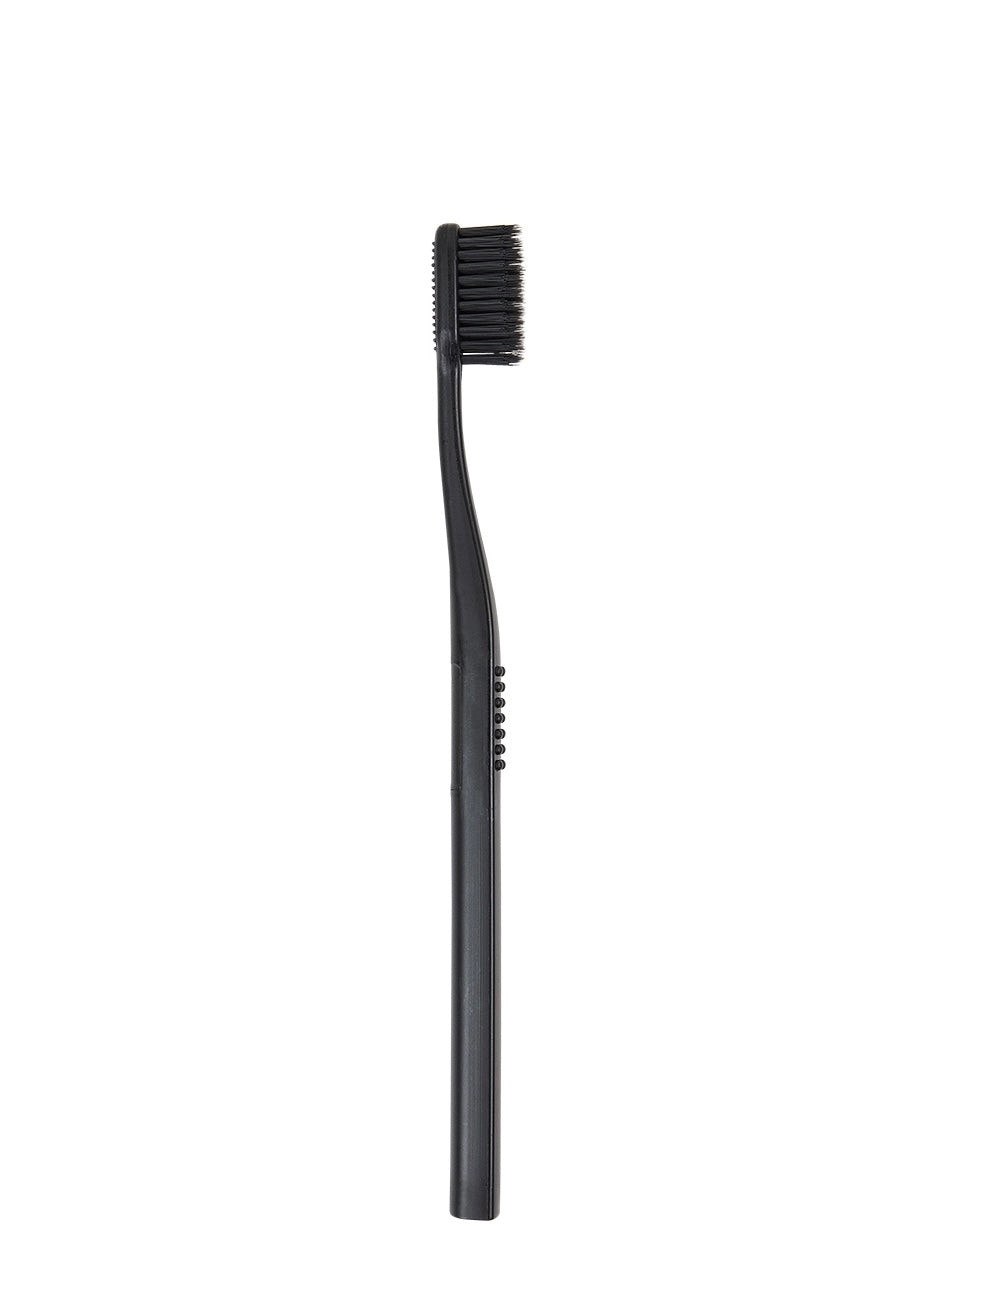 Black Toothbrush Set of 5